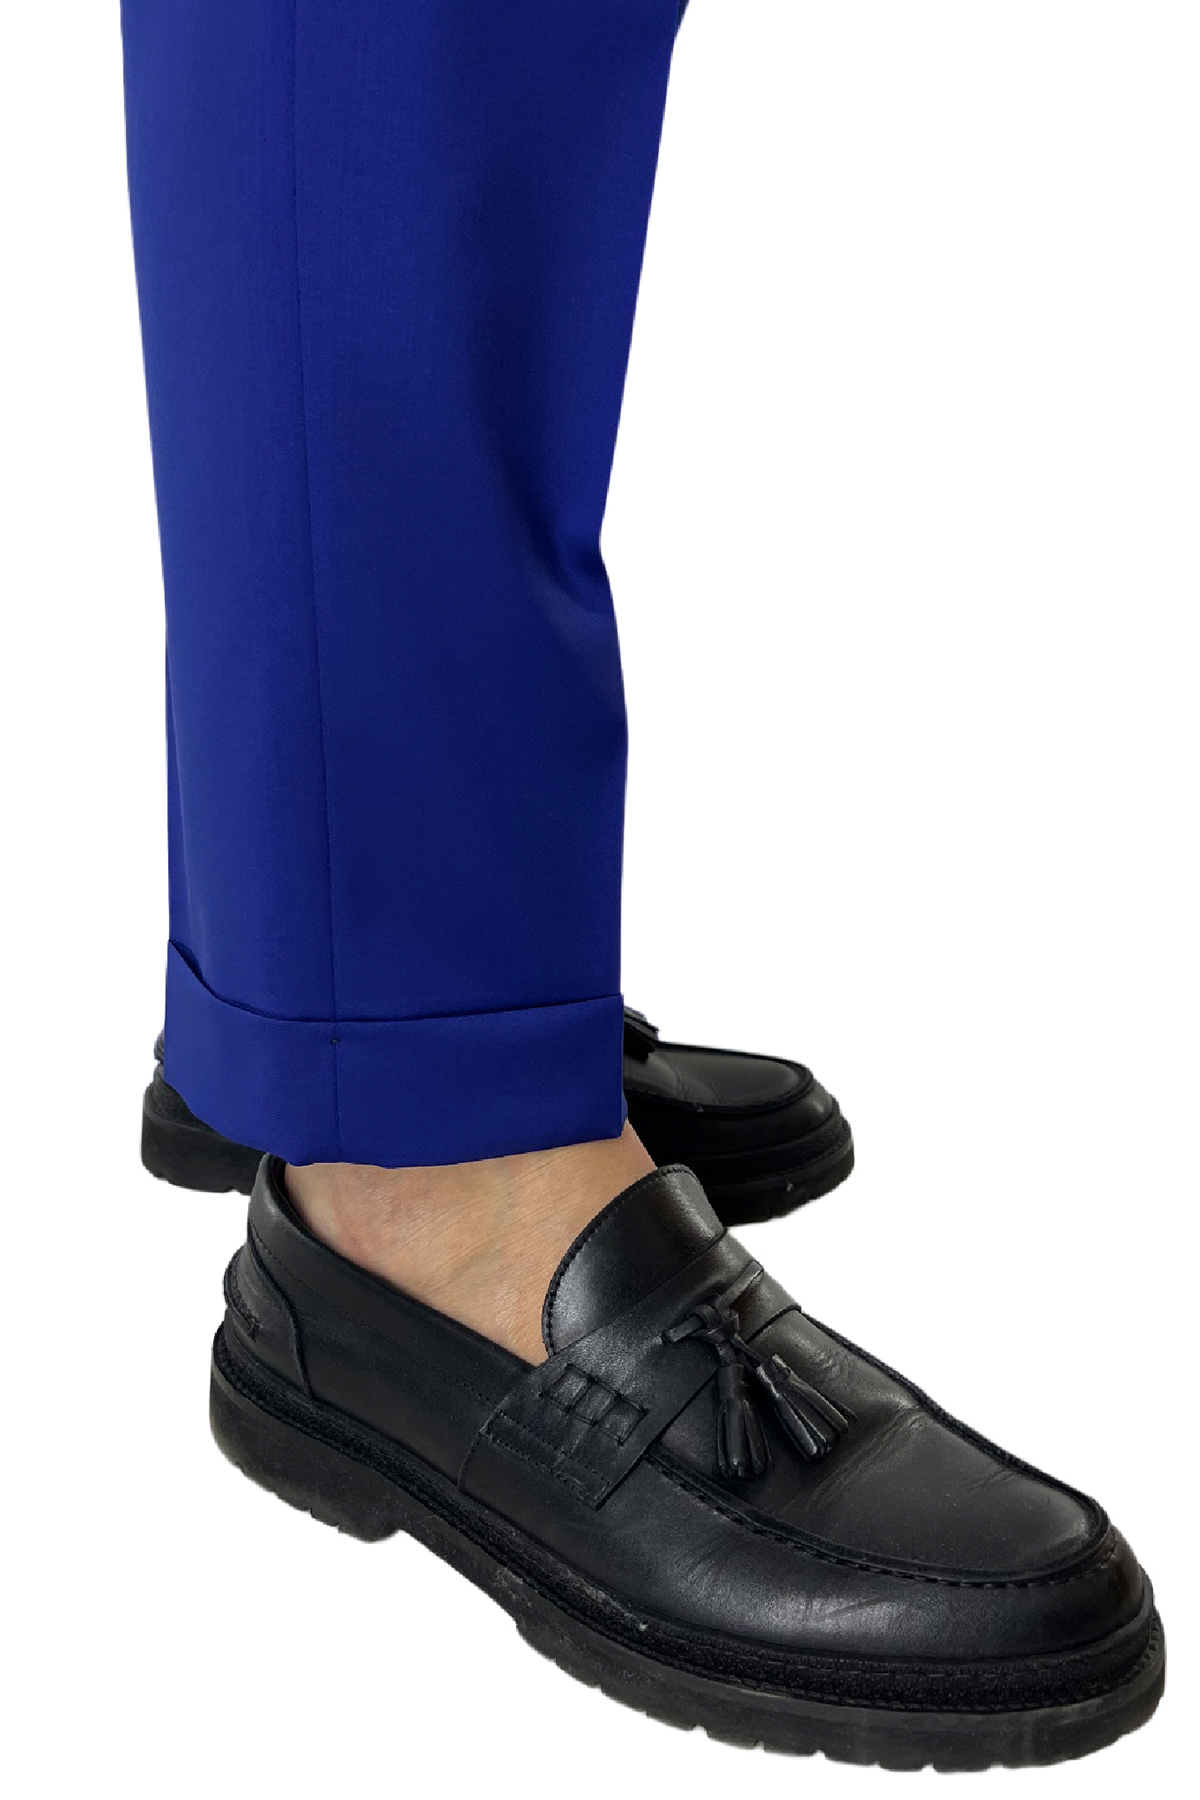 Pantalone uomo bluette vita alta tasca america in fresco lana 100% Vitale Barberis Canonico fibbie laterali e risvolto 4cm